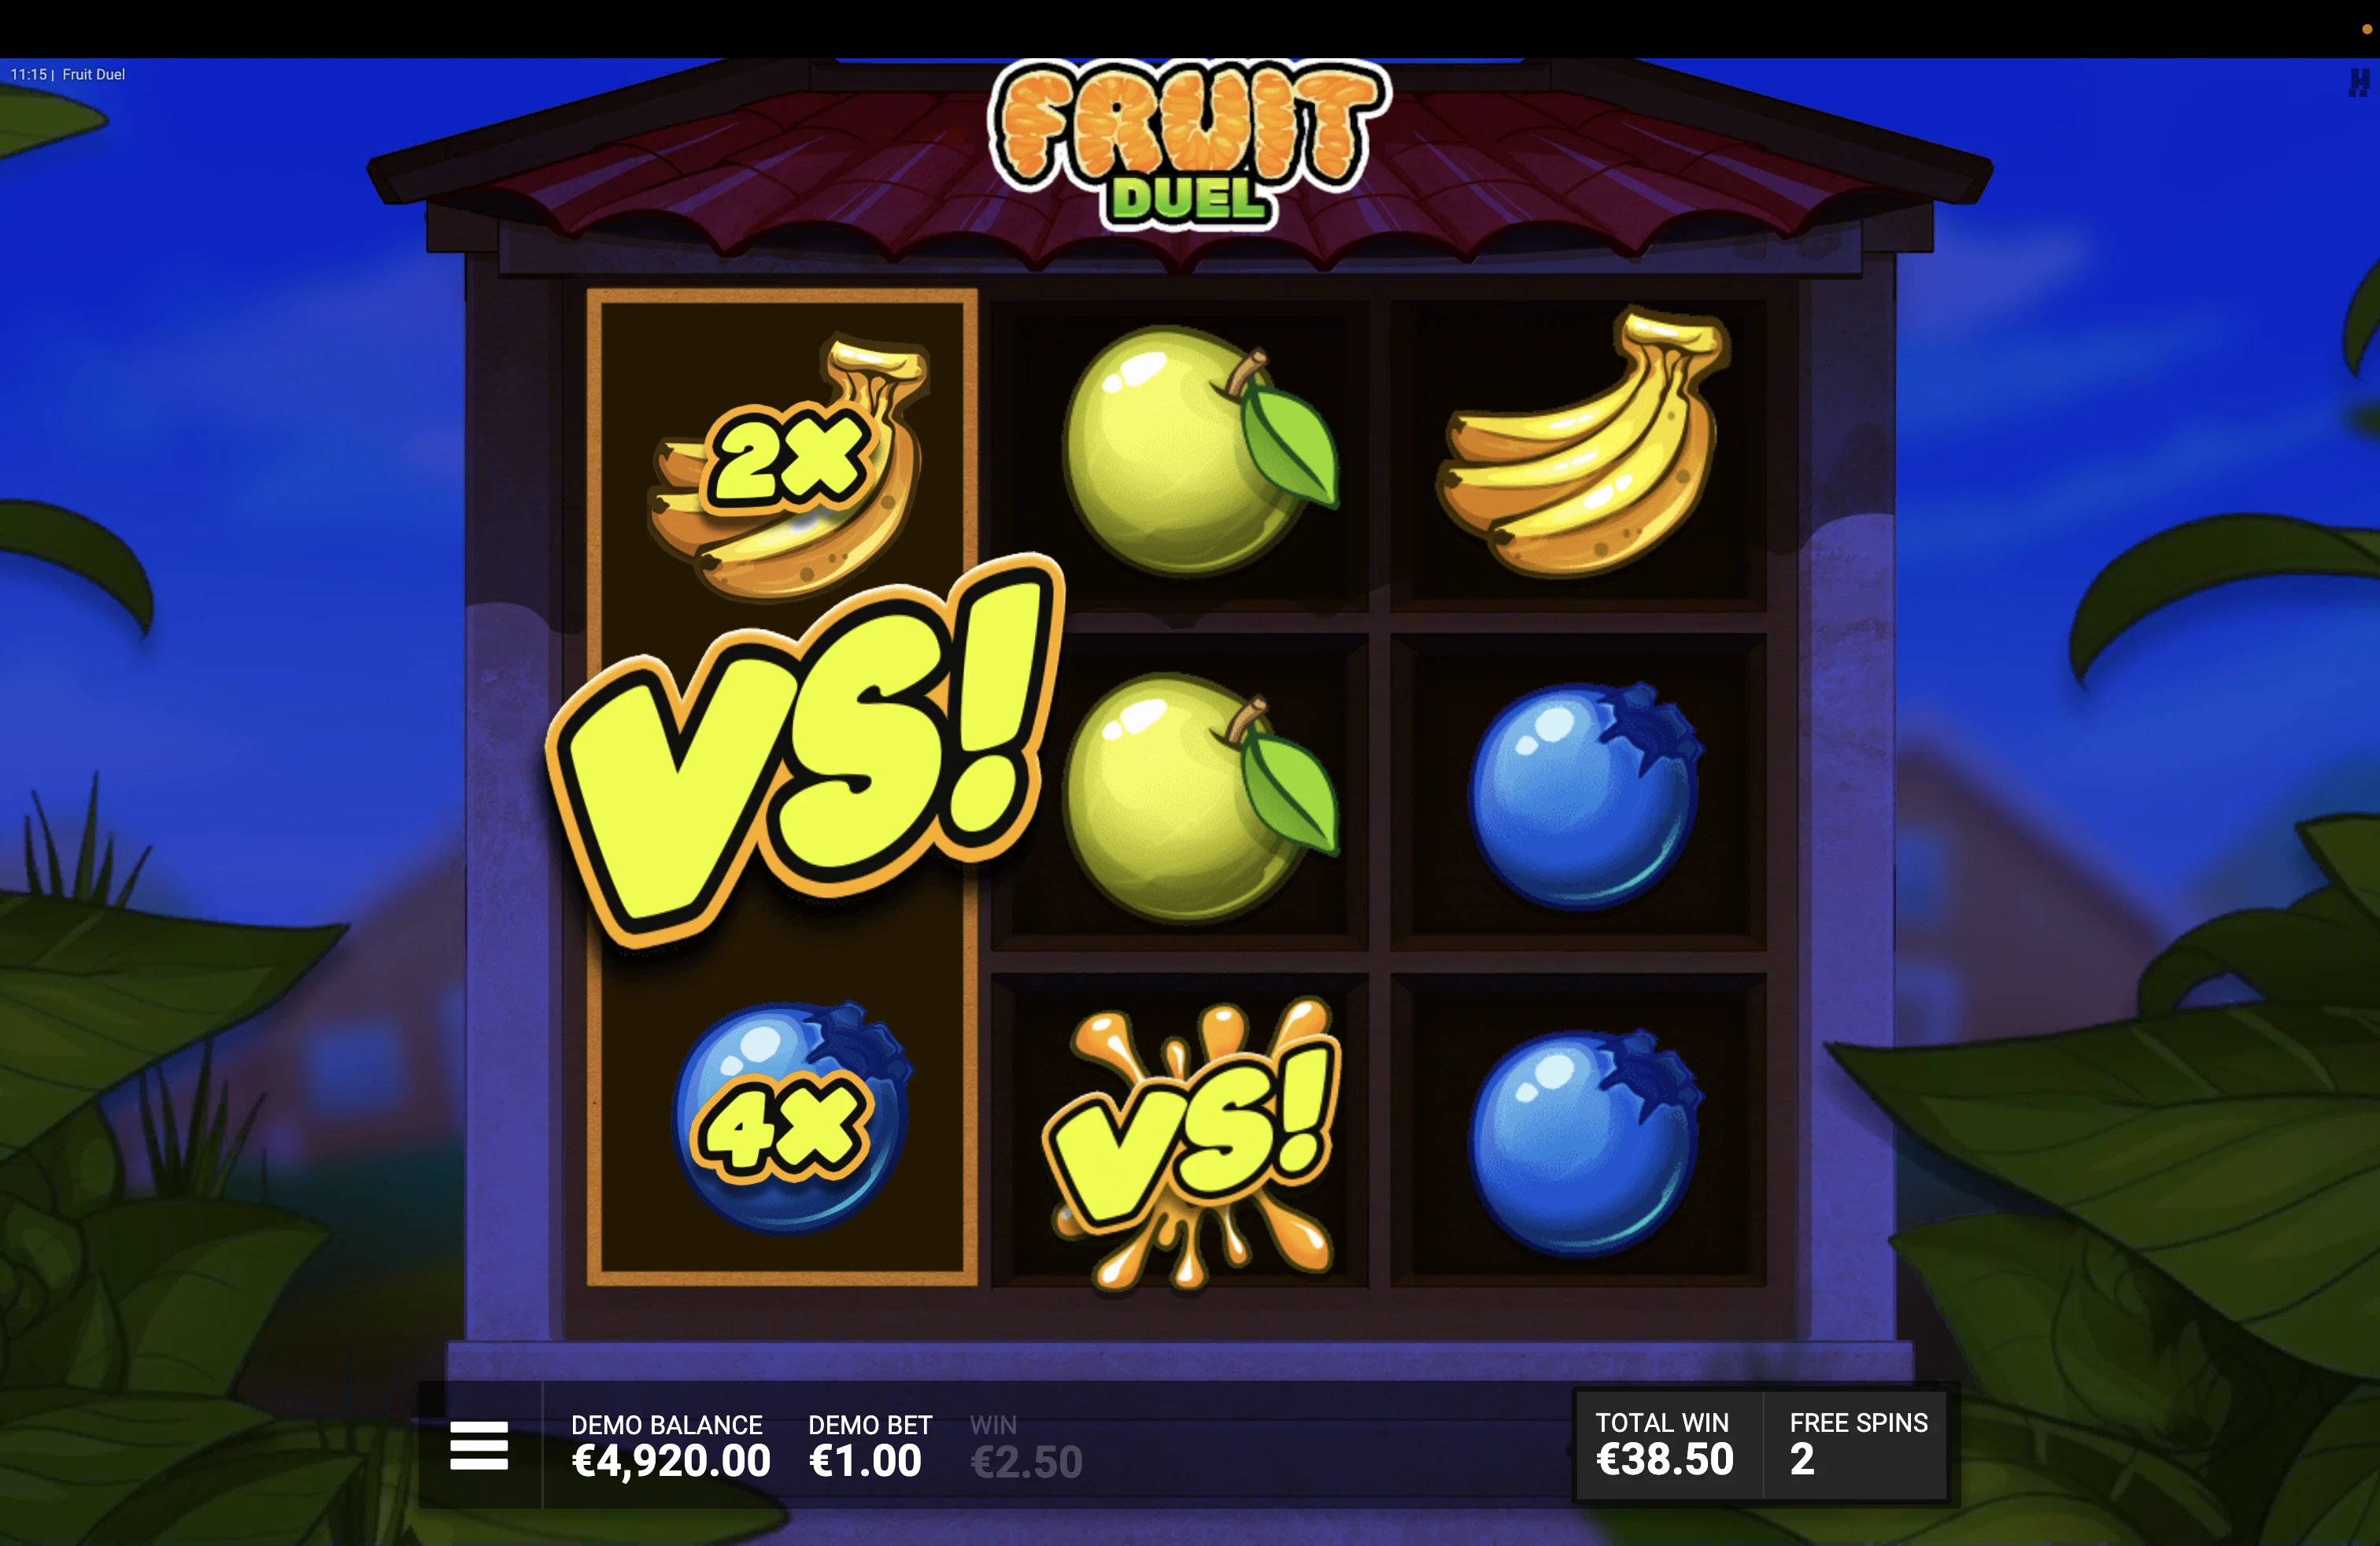 Le bonus sur Fruit Duel fonctionne exactement comme le jeu de base